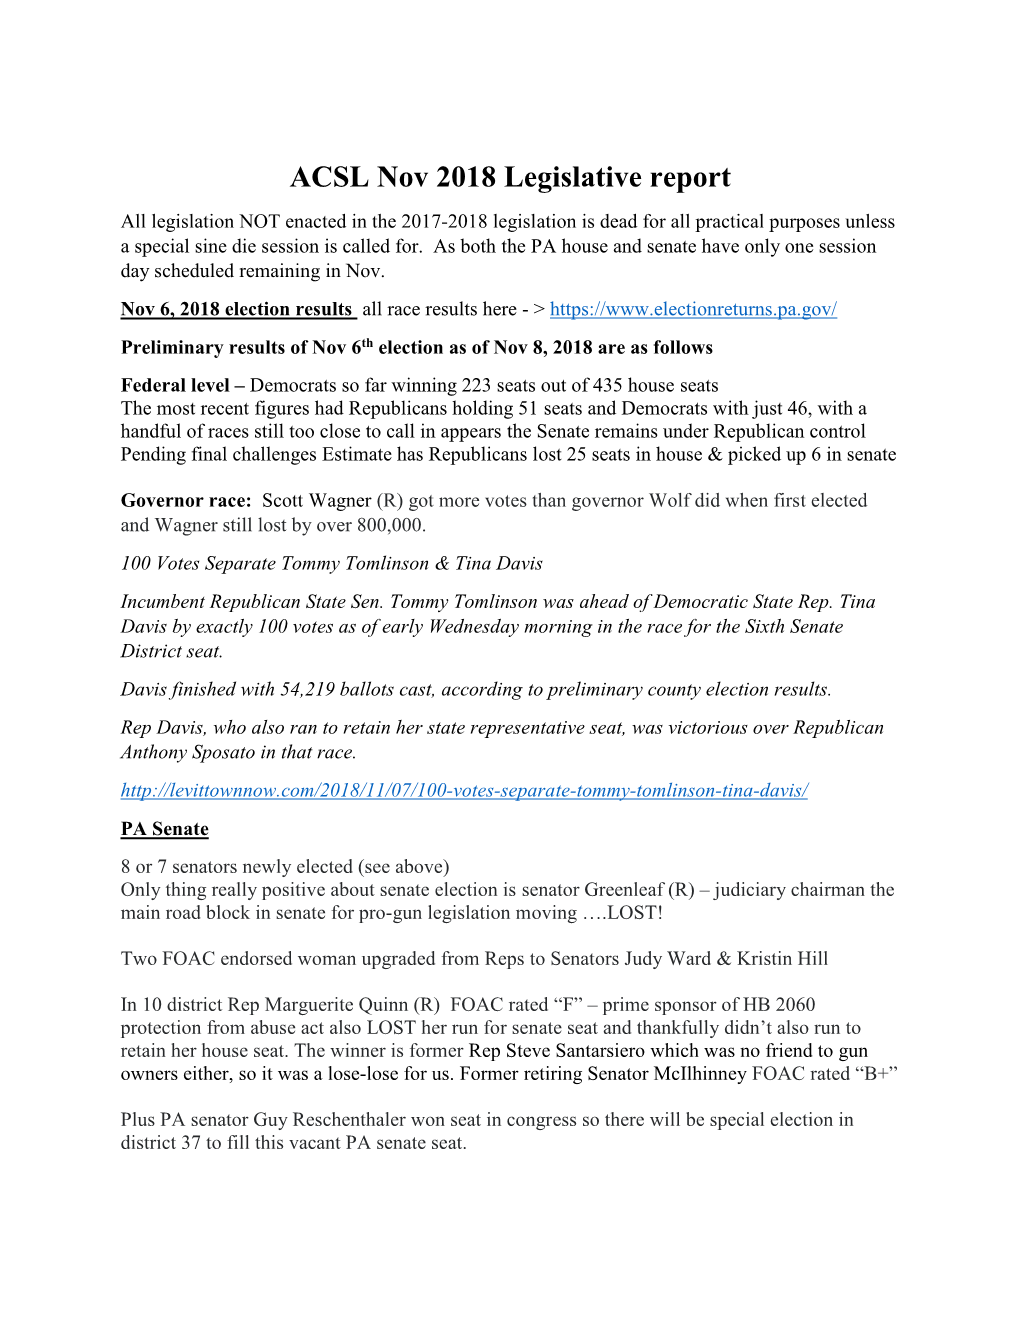 ACSL Nov 2018 Legislative Report